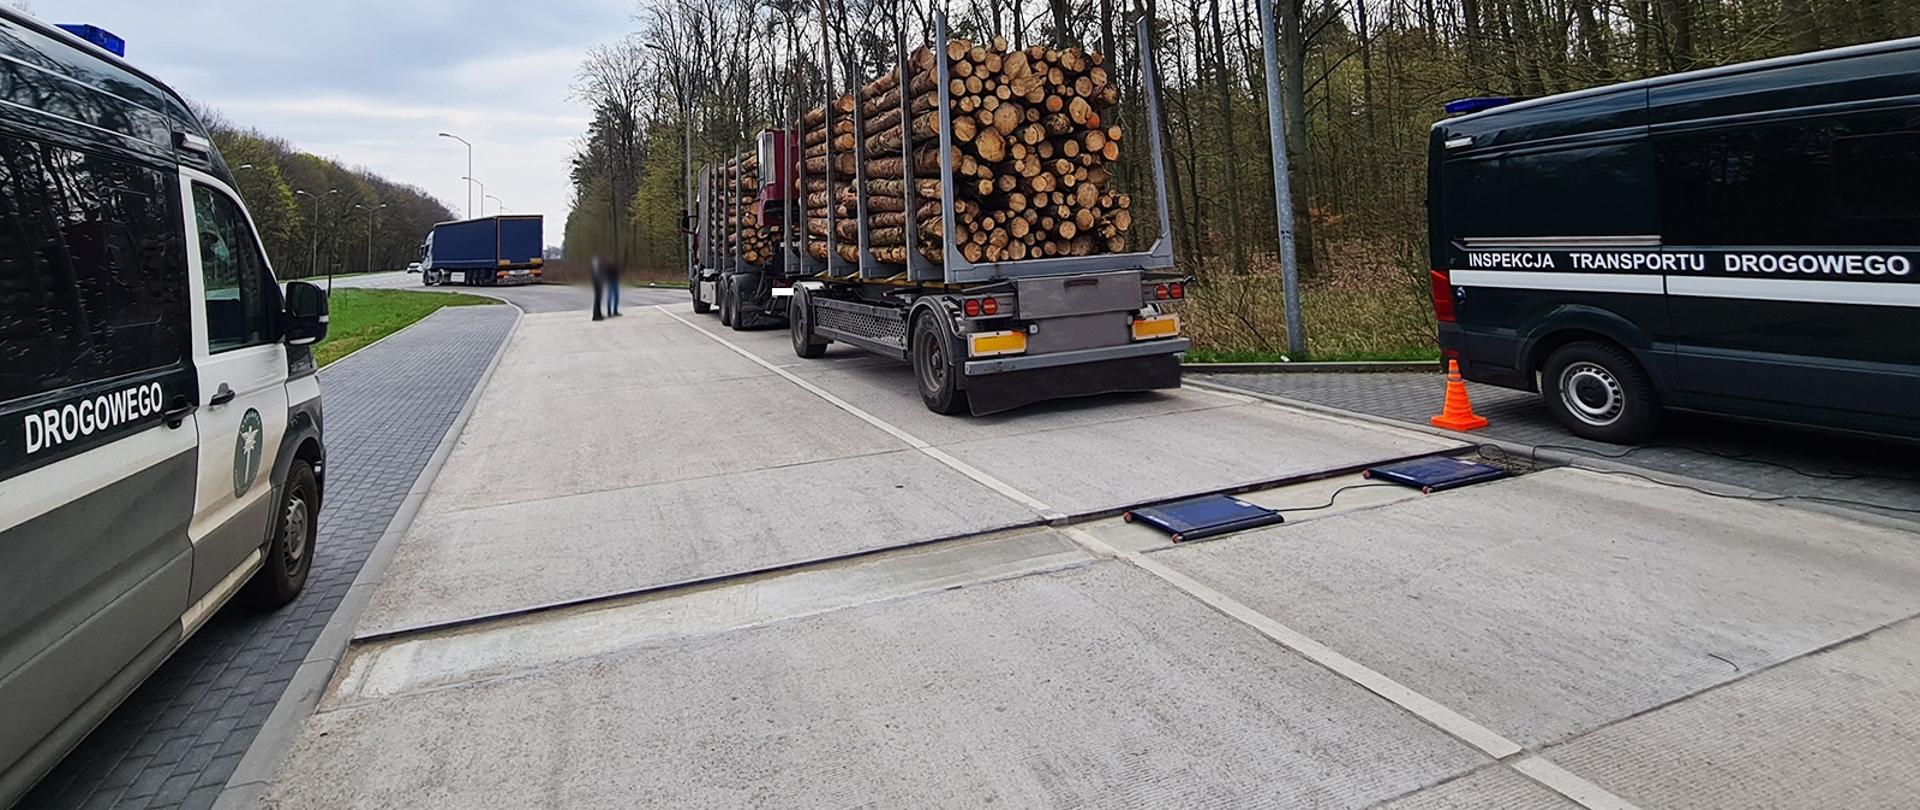 Kontrola tonażu pojazdu ciężarowego przewożącego drewno, zatrzymanego przez zachodniopomorskich inspektorów